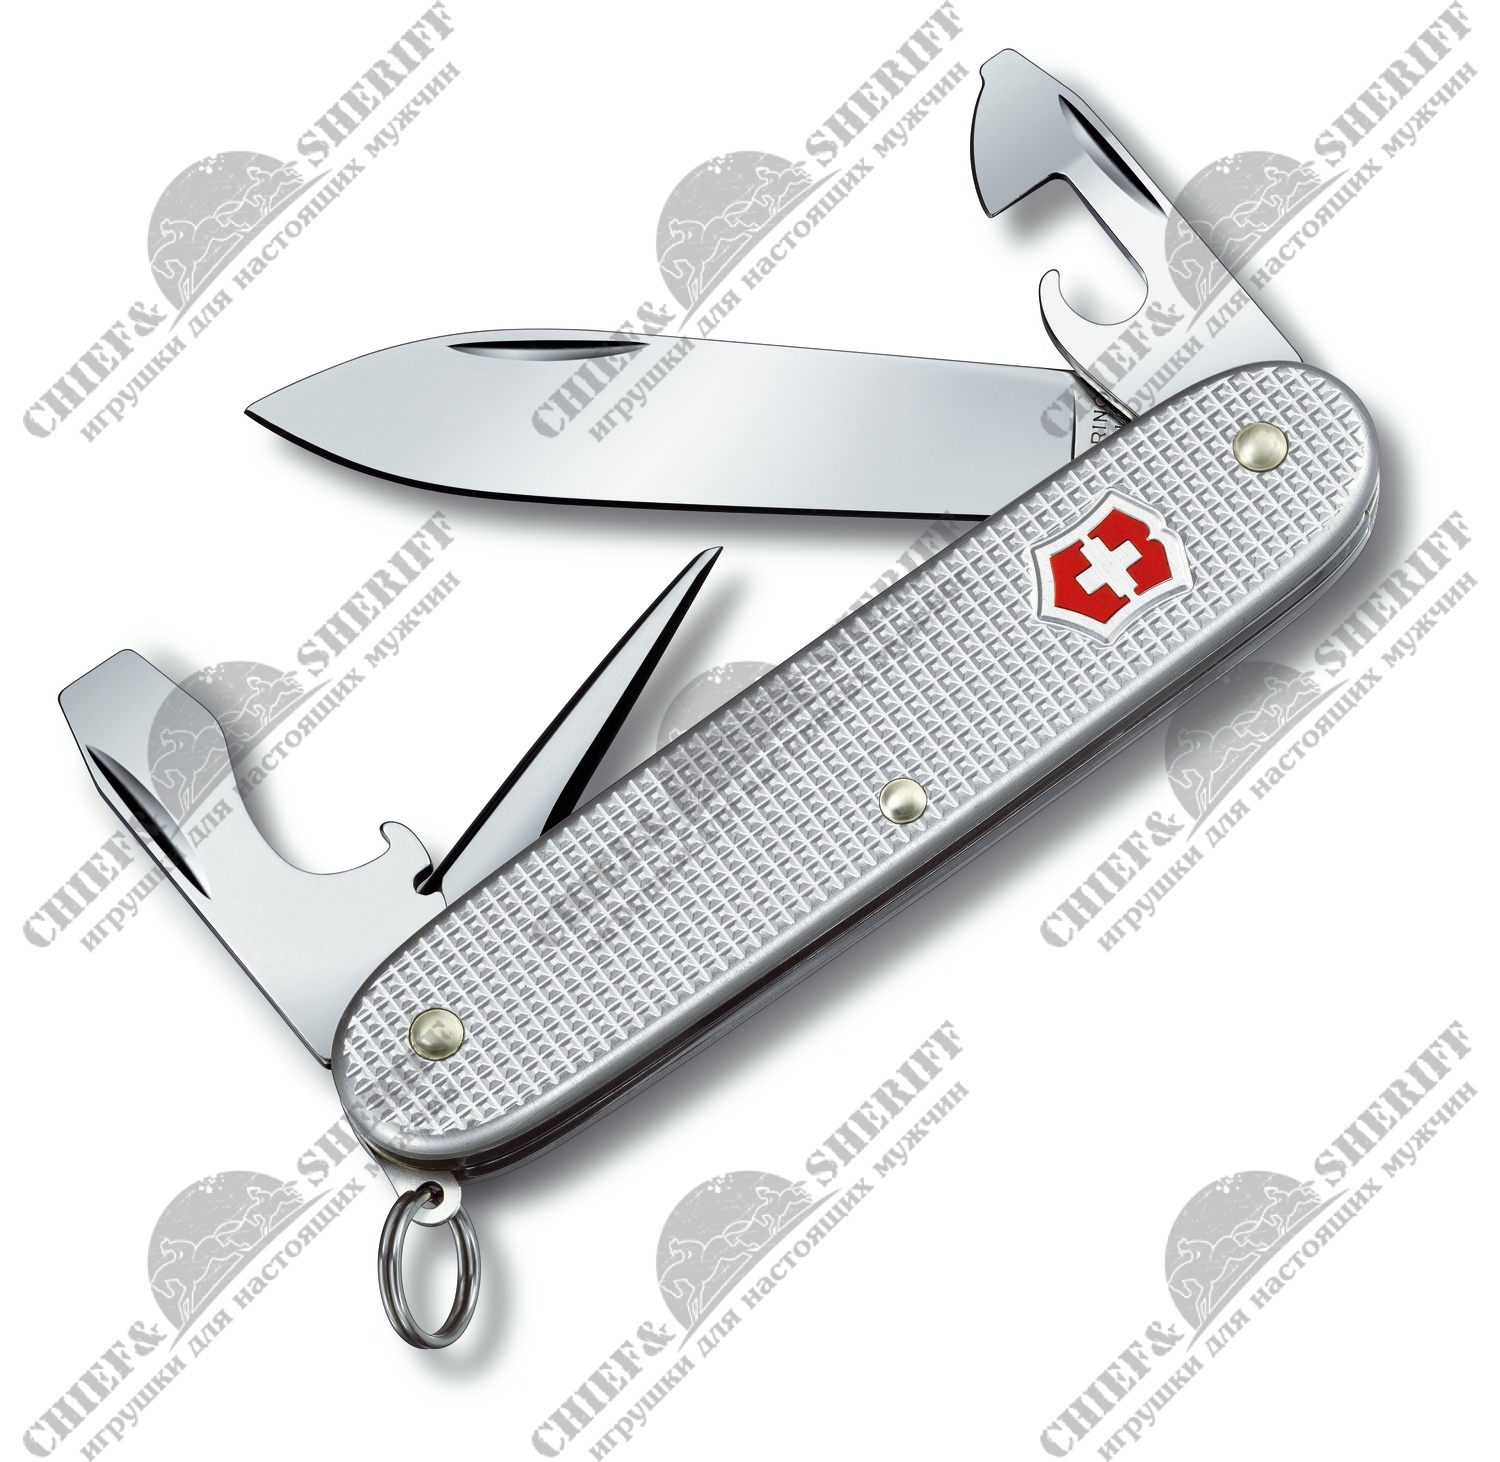 Нож перочинный Victorinox Pioneer, 93 мм, 8 функций алюминиевая рукоять серебристый, 0.8201.26